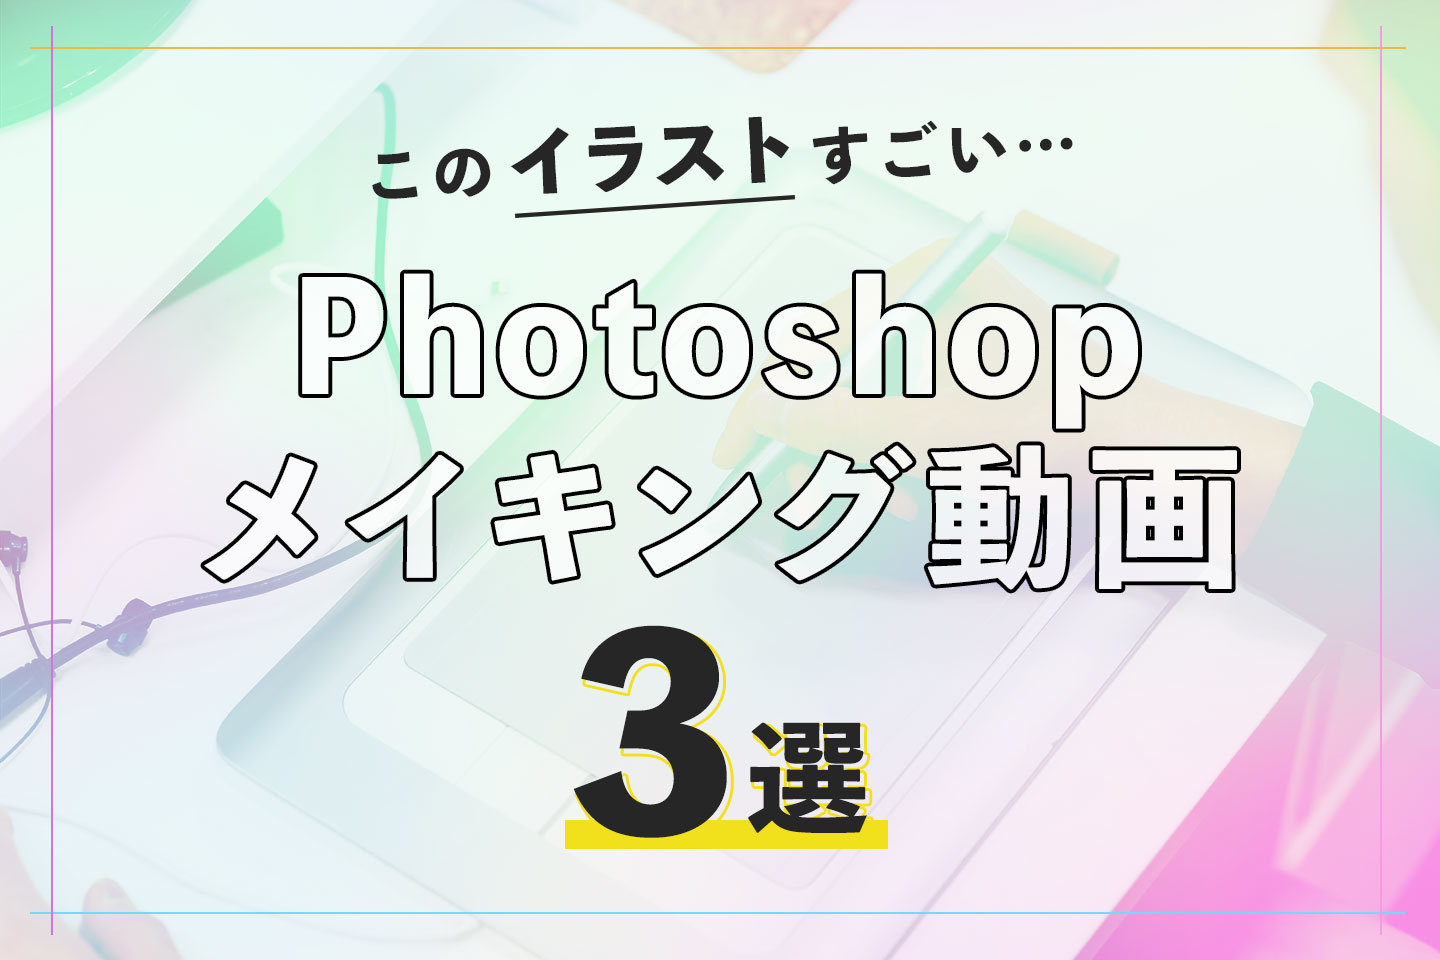 このイラストすごい ってなる Photoshop メイキング動画３選 株式会社cube 熊本 ホームページ制作